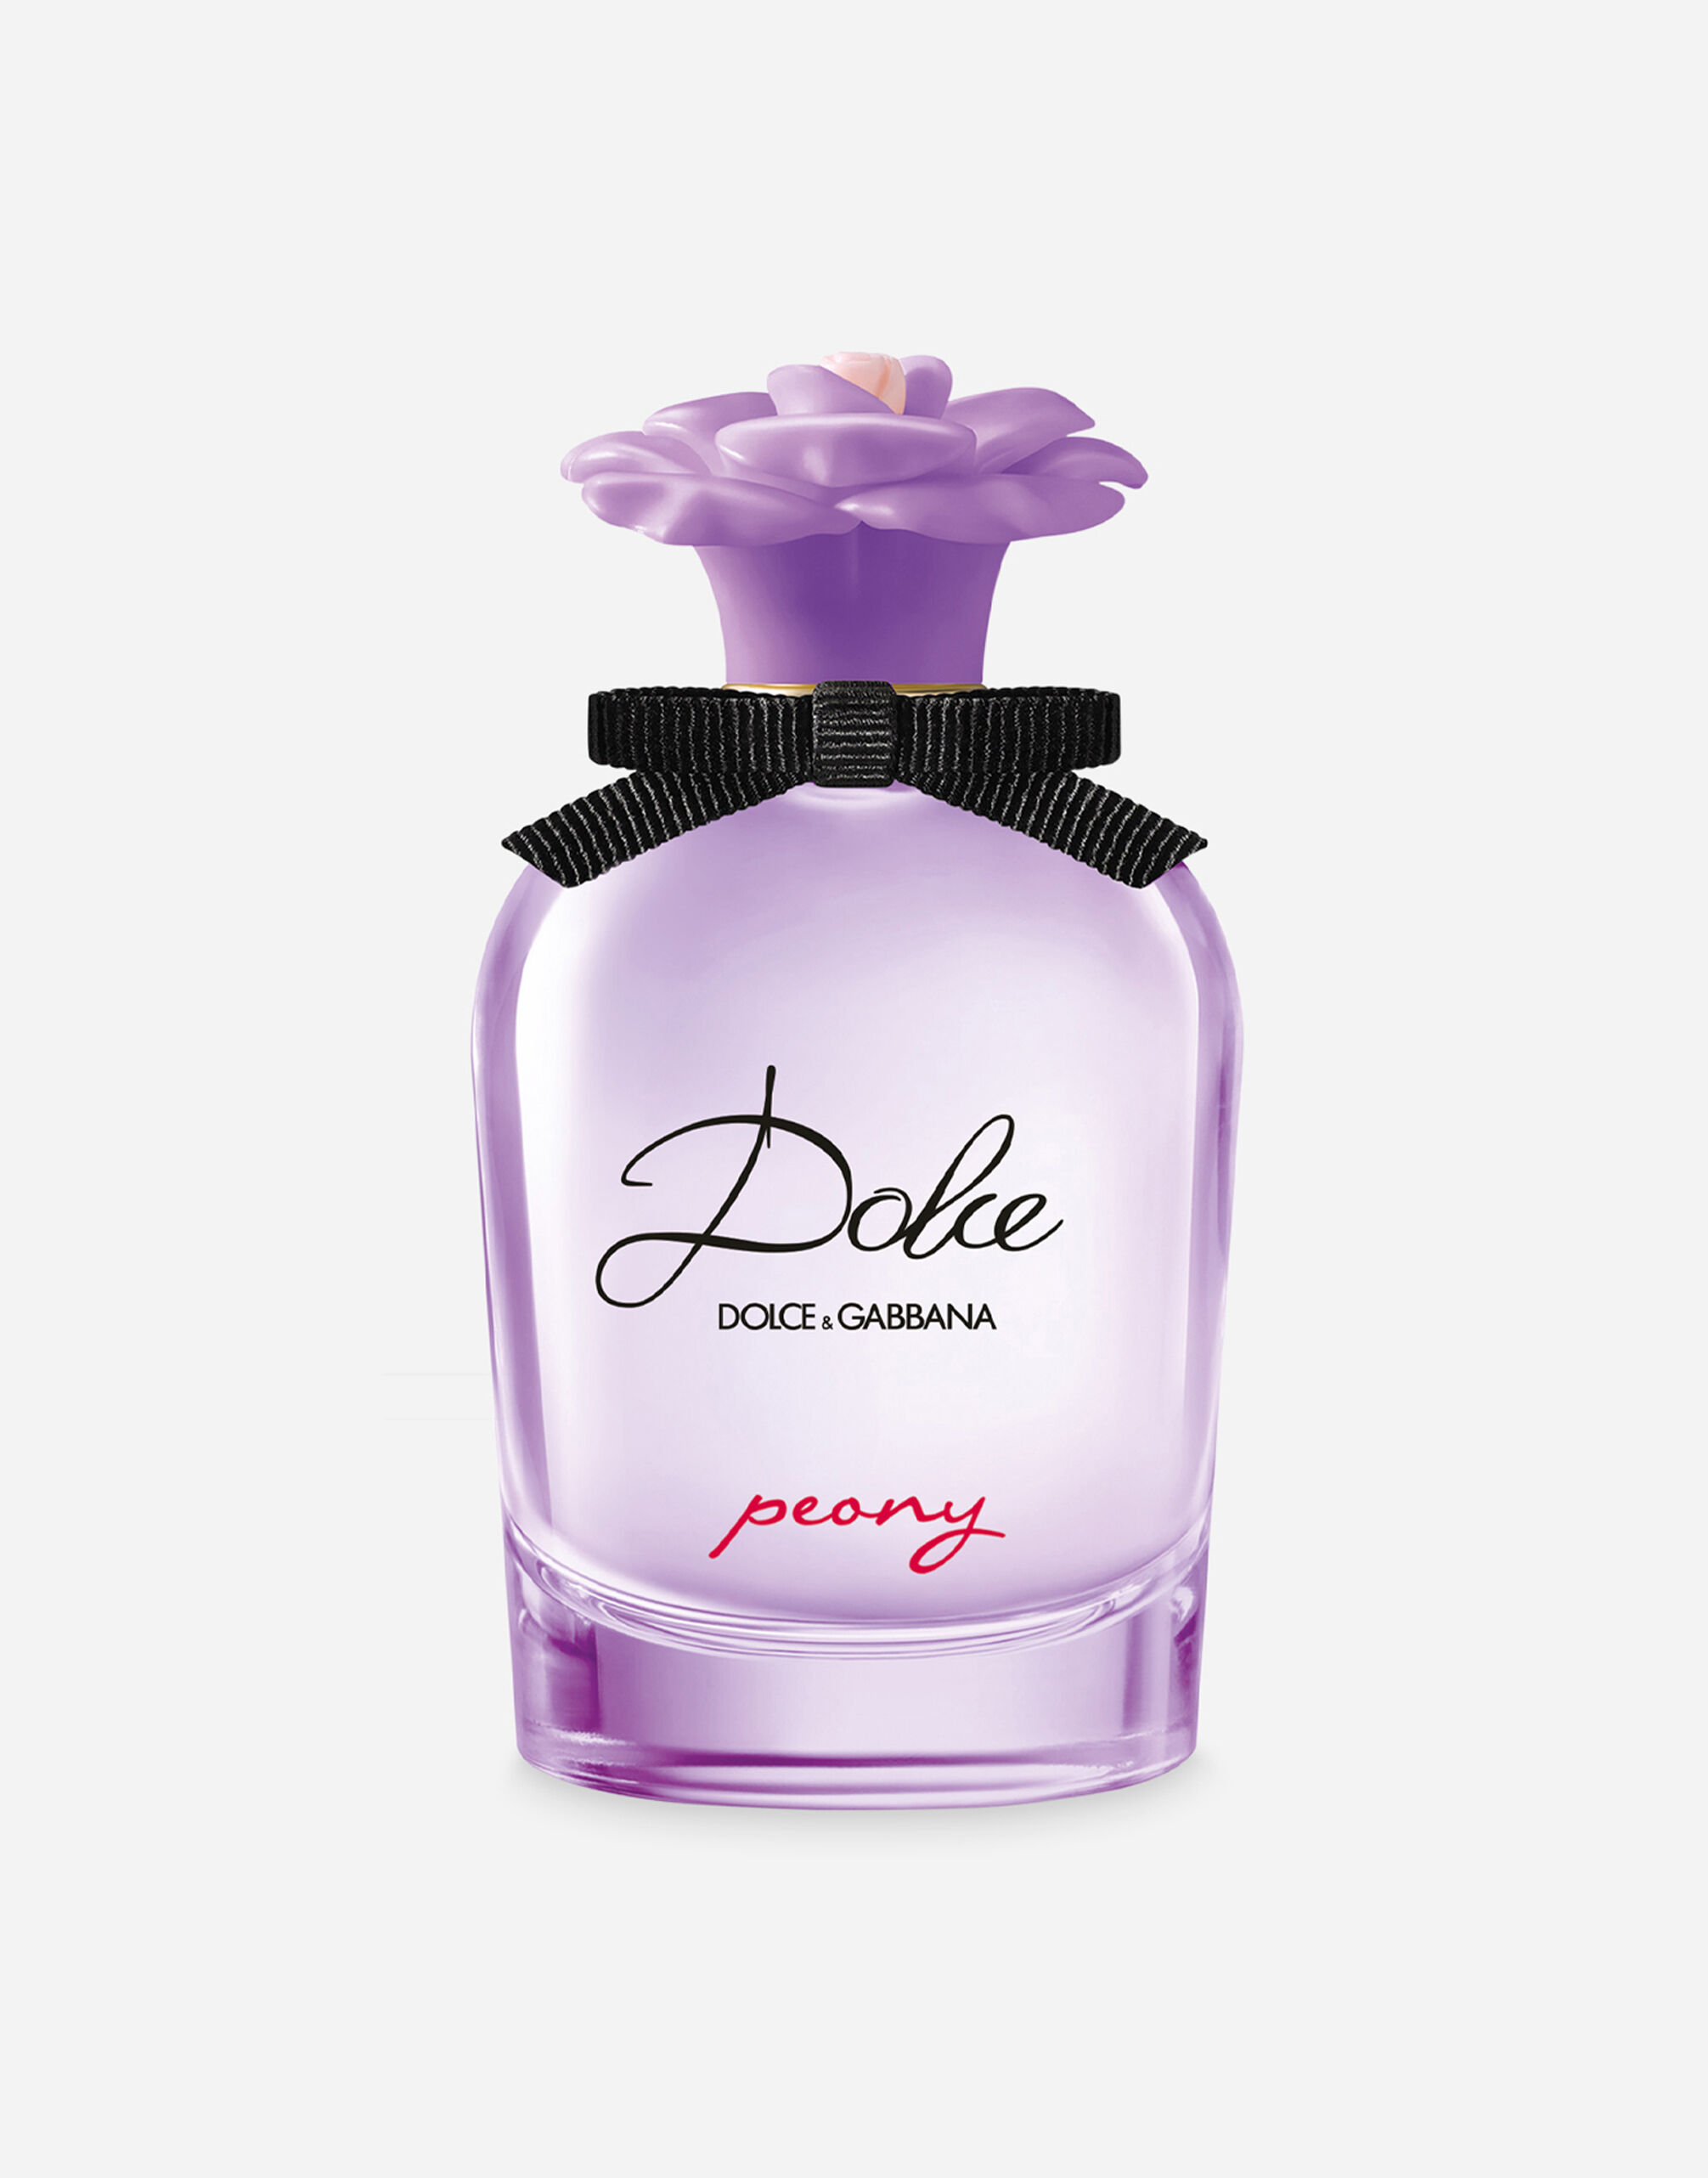 Dolce & Gabbana Dolce Peony Eau de Parfum - VT00G4VT000